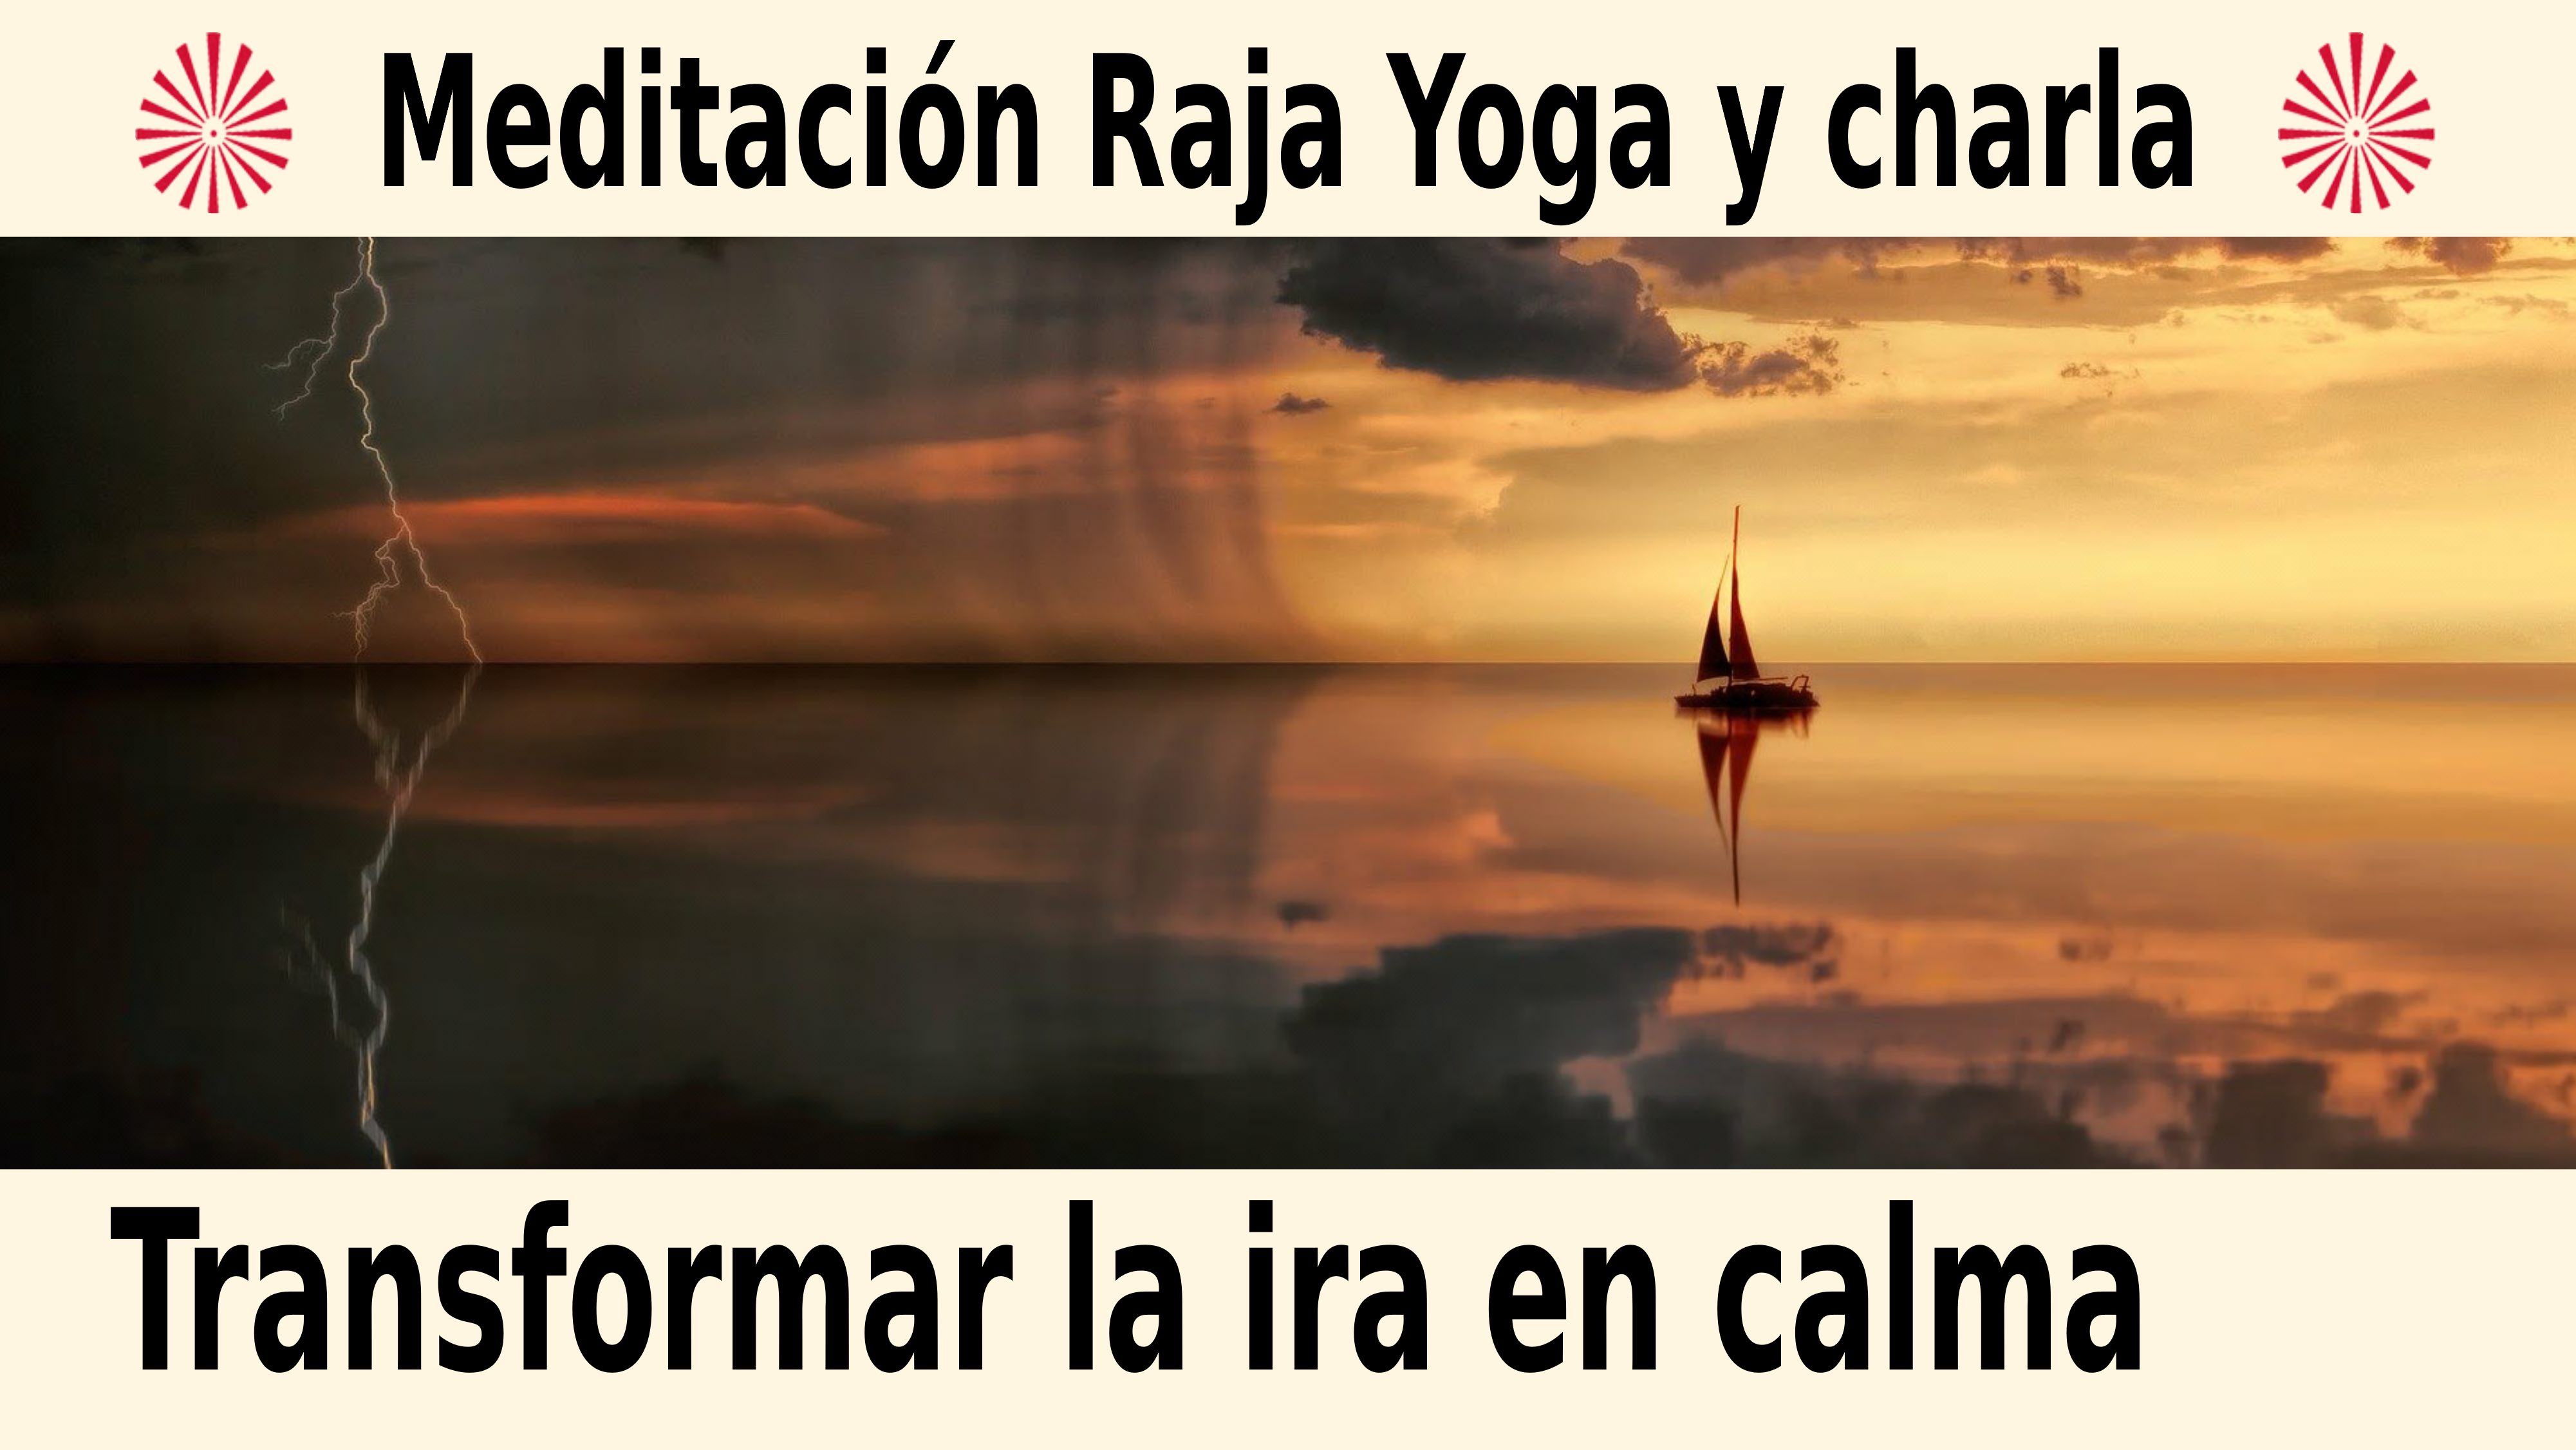 Meditación Raja Yoga y charla: Transformar la ira en calma (7 Diciembre 2020) On-line desde Mallorca